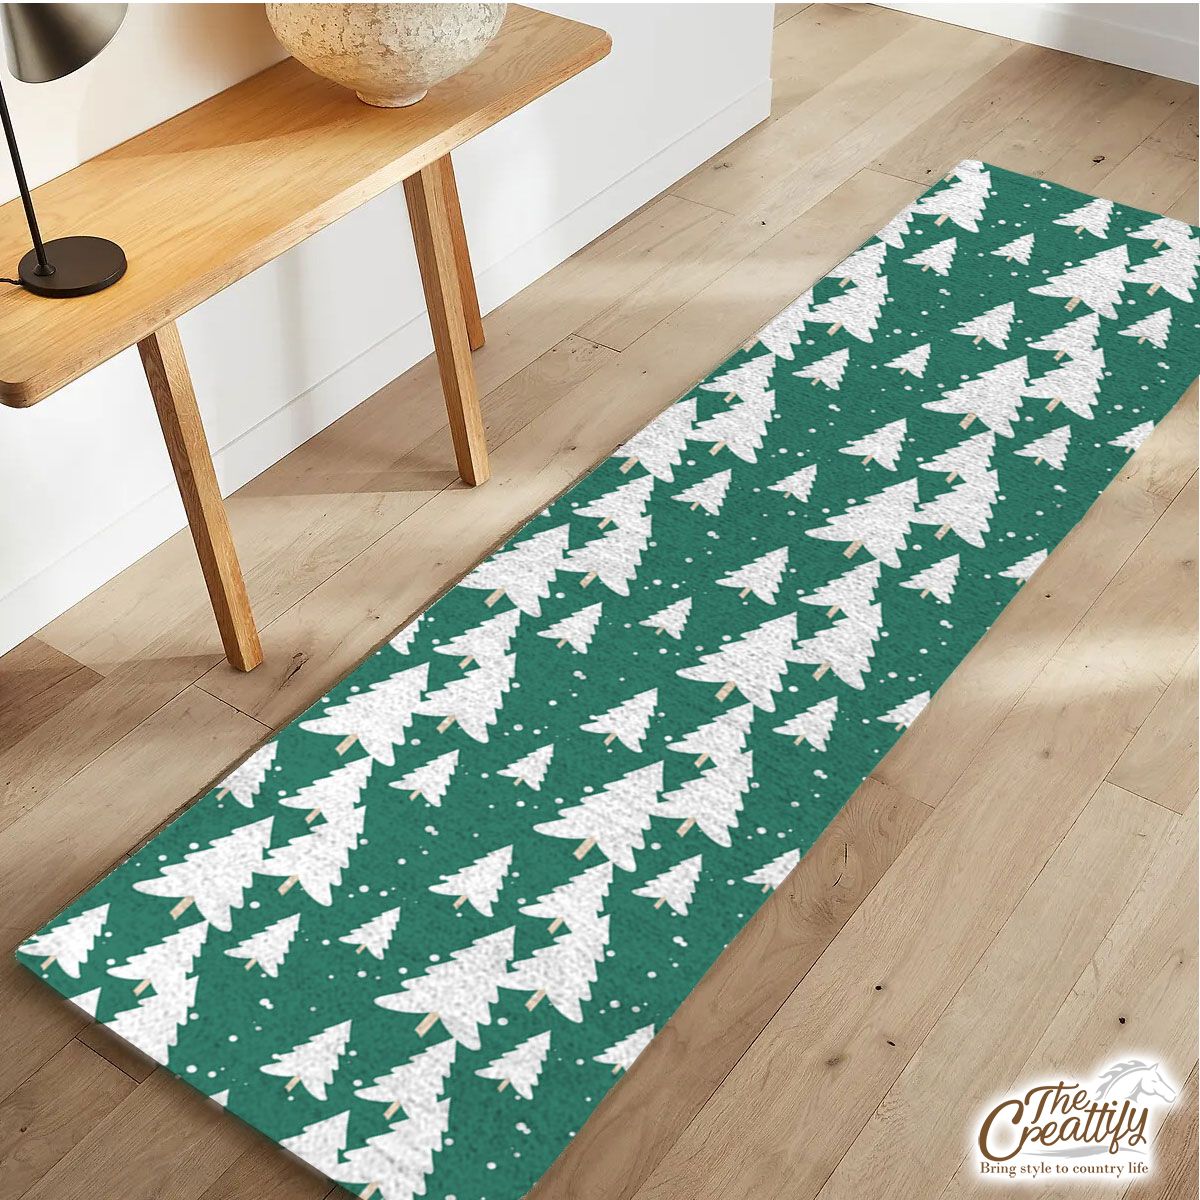 Green And White Christmas Tree Runner Carpet